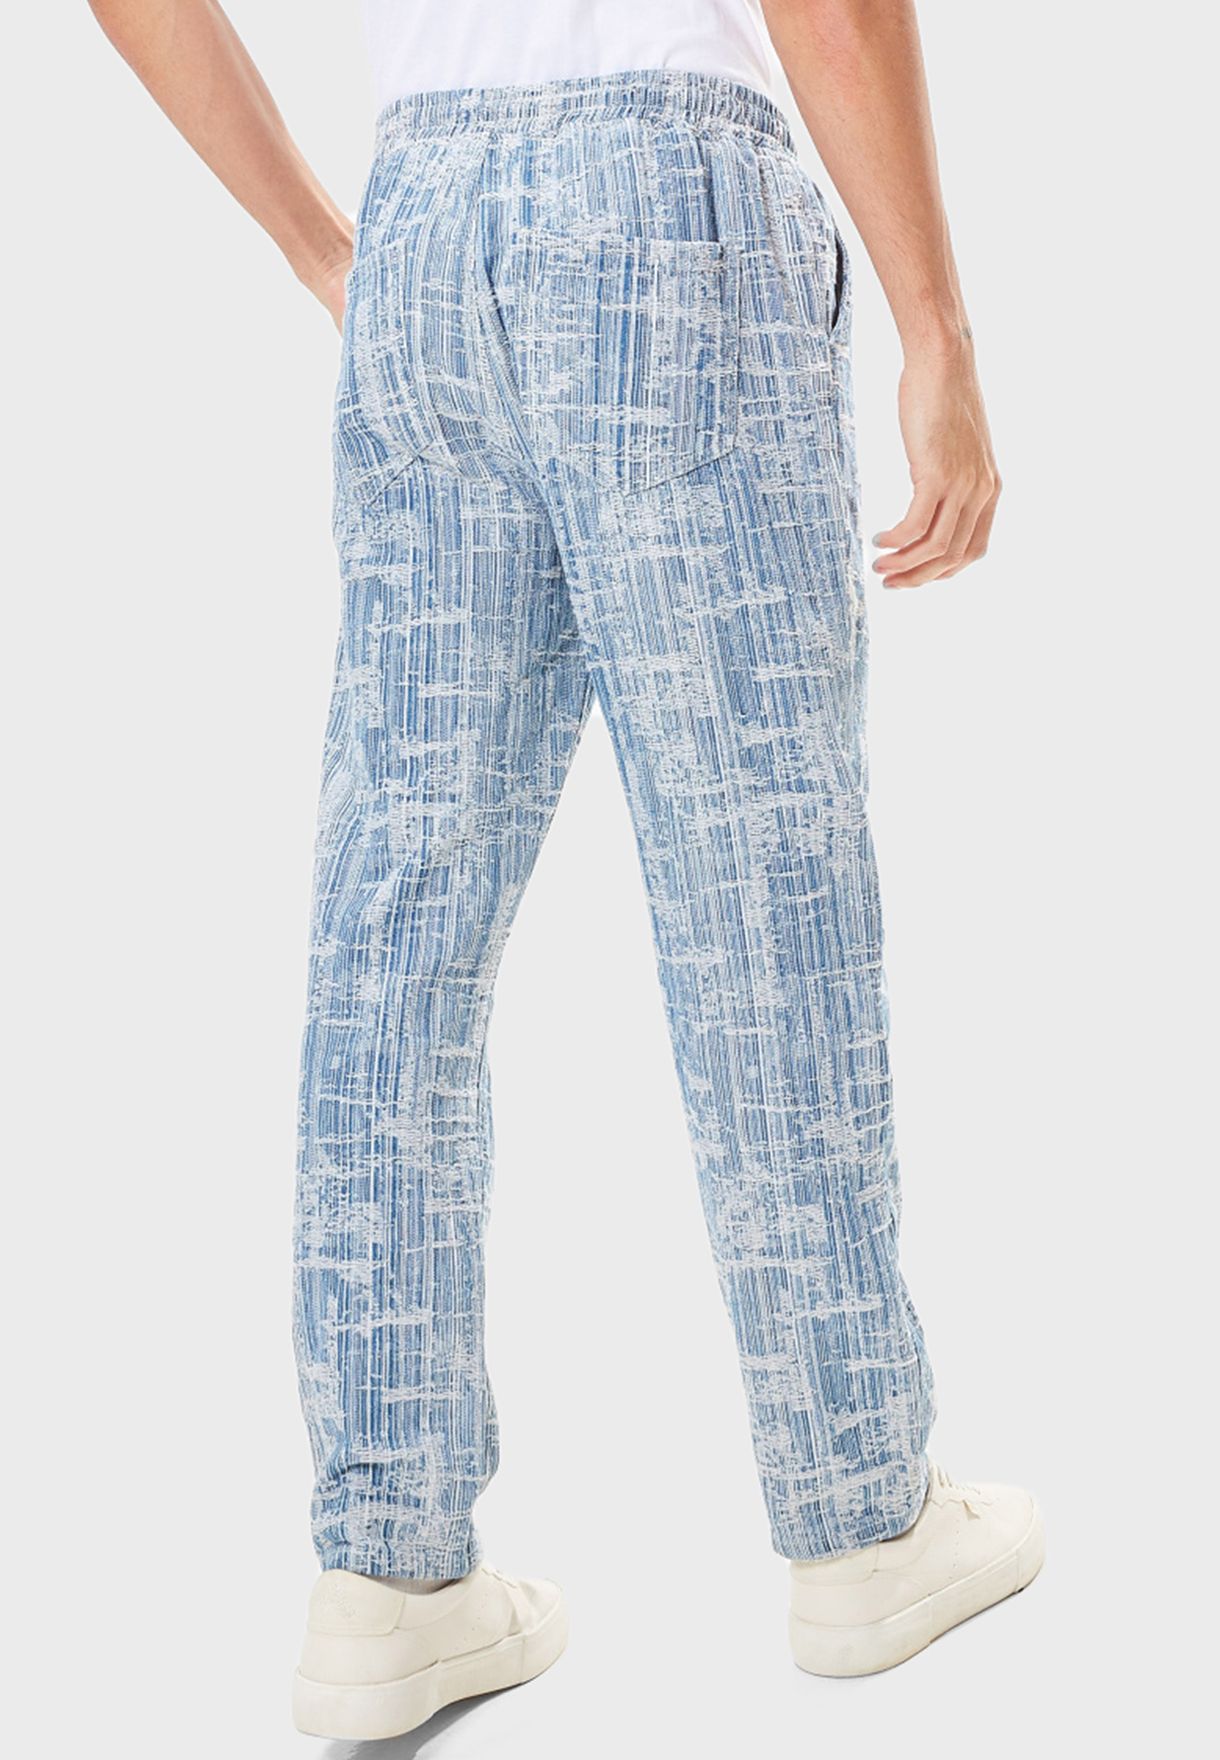 Jacquard Textured Pants